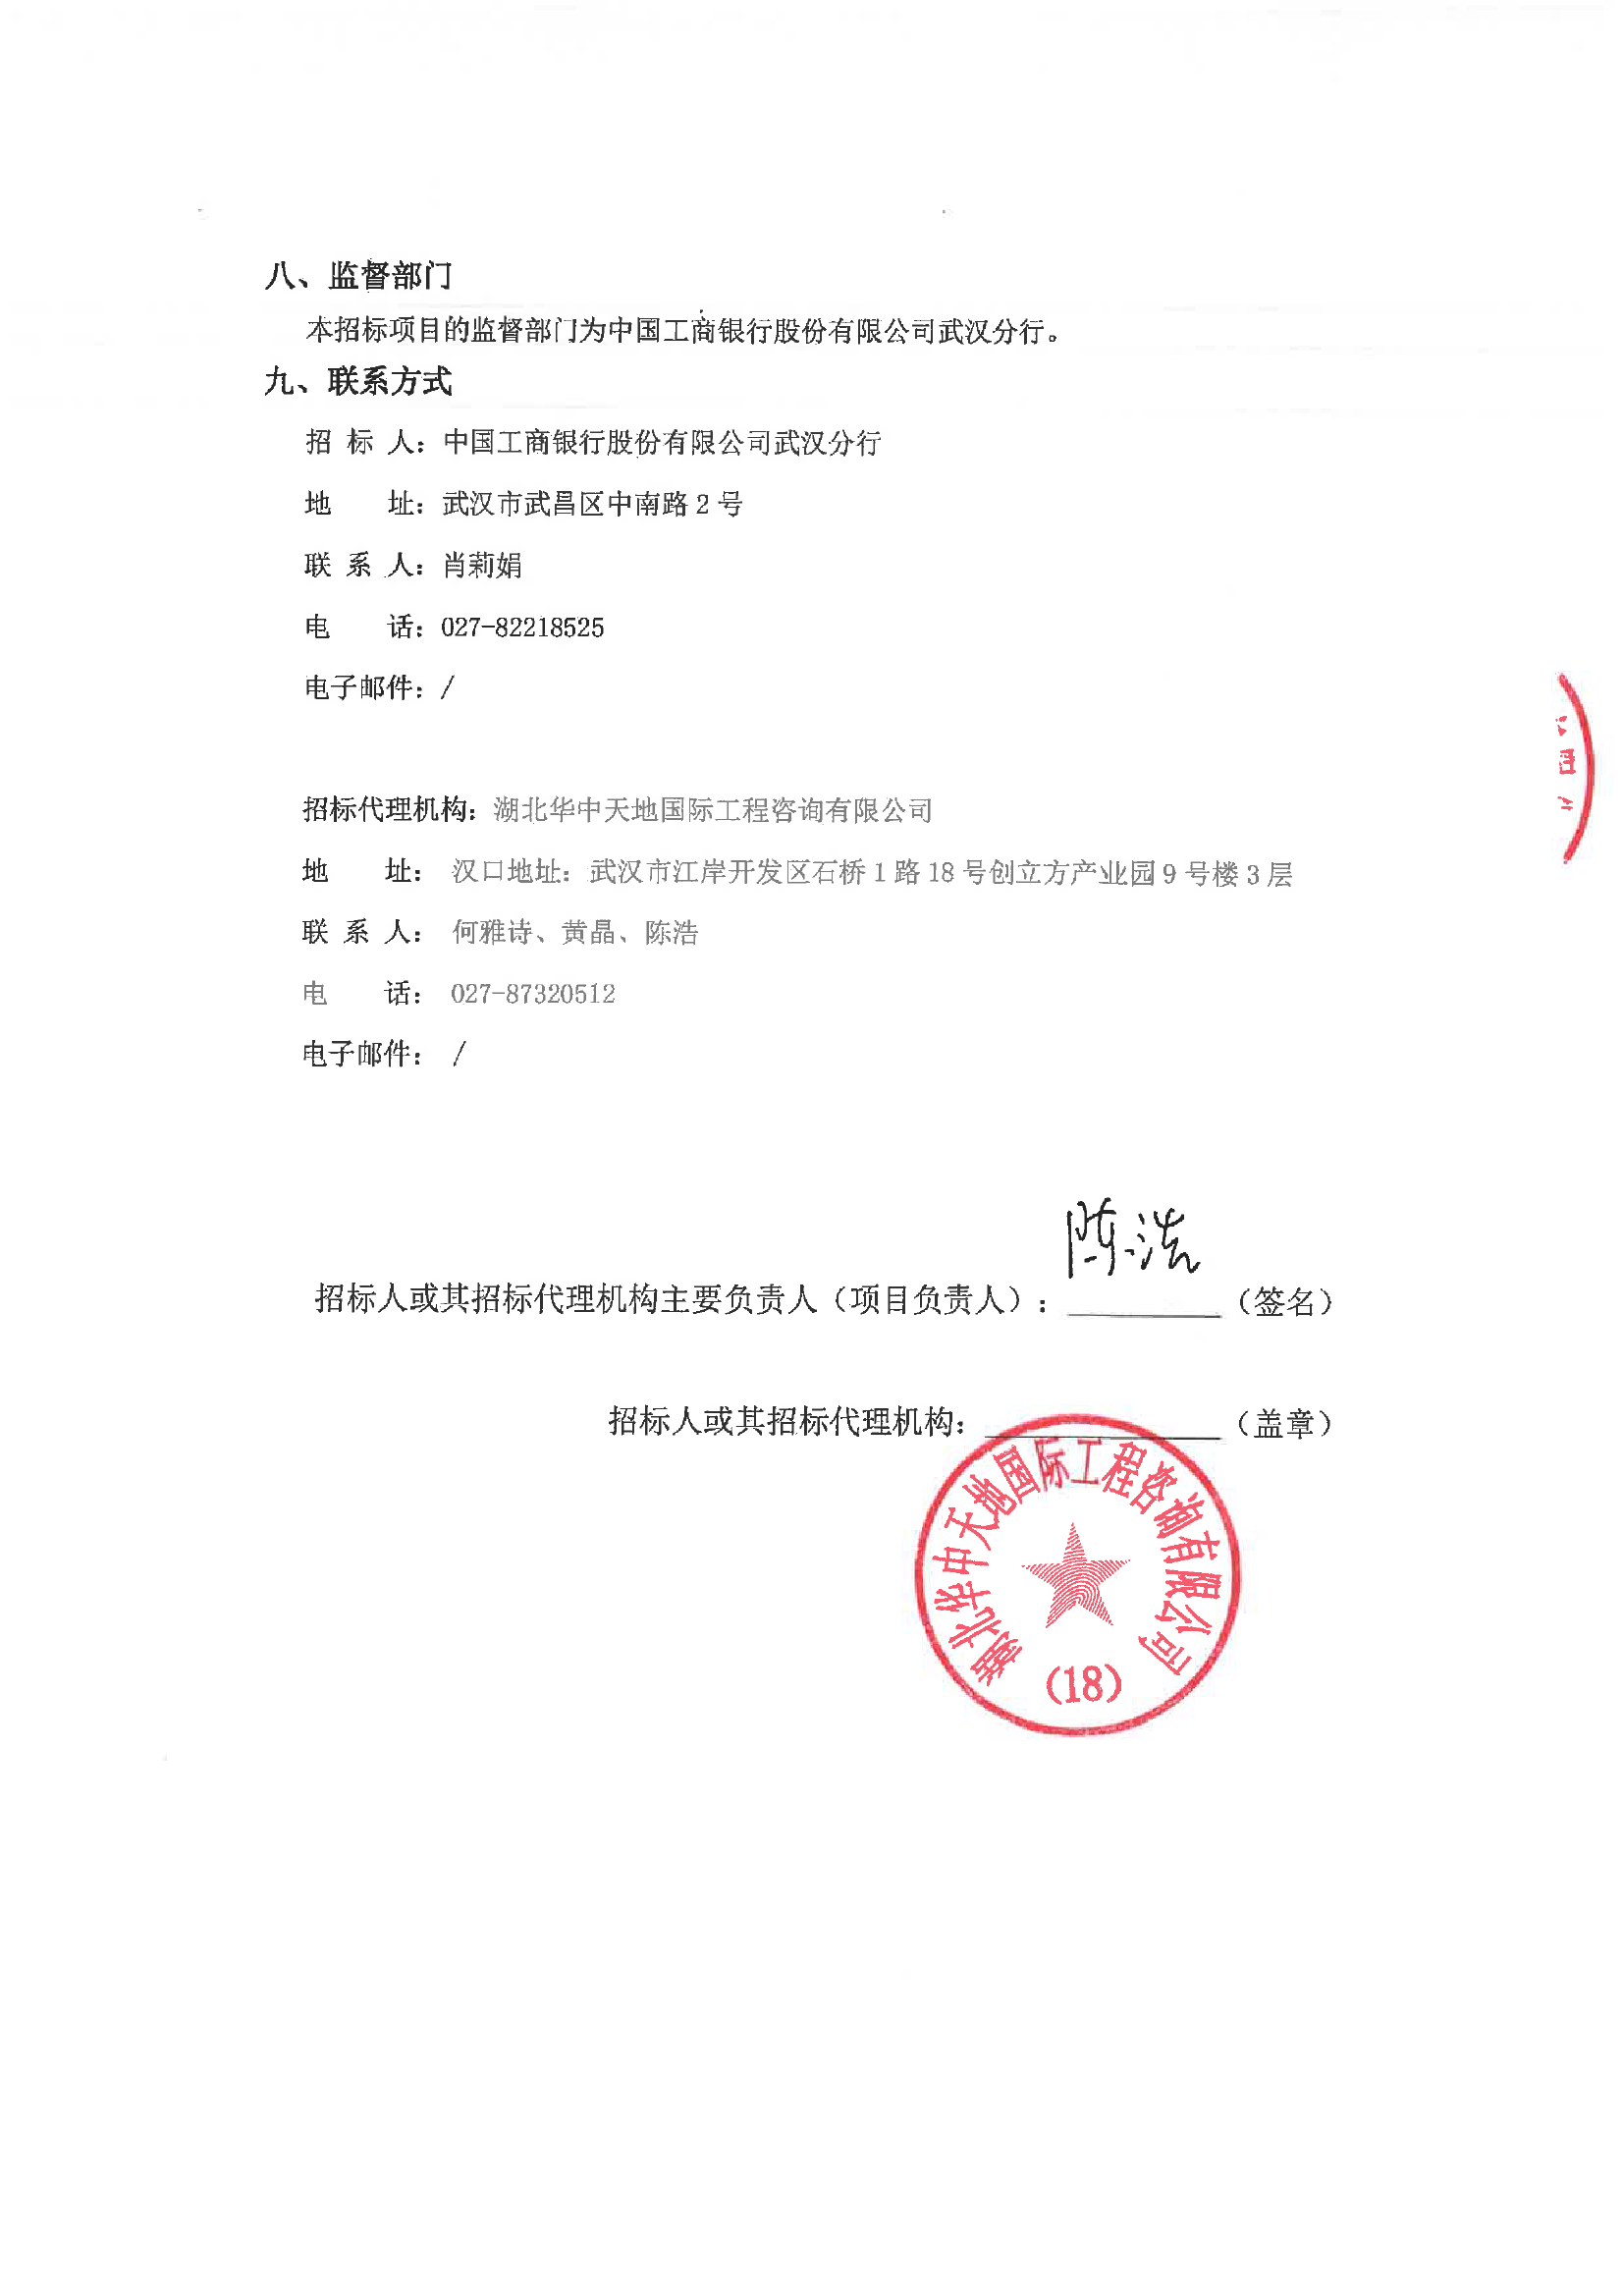 中国工商银行武汉分行一般凭证印刷定点供应商入围项目招标公告